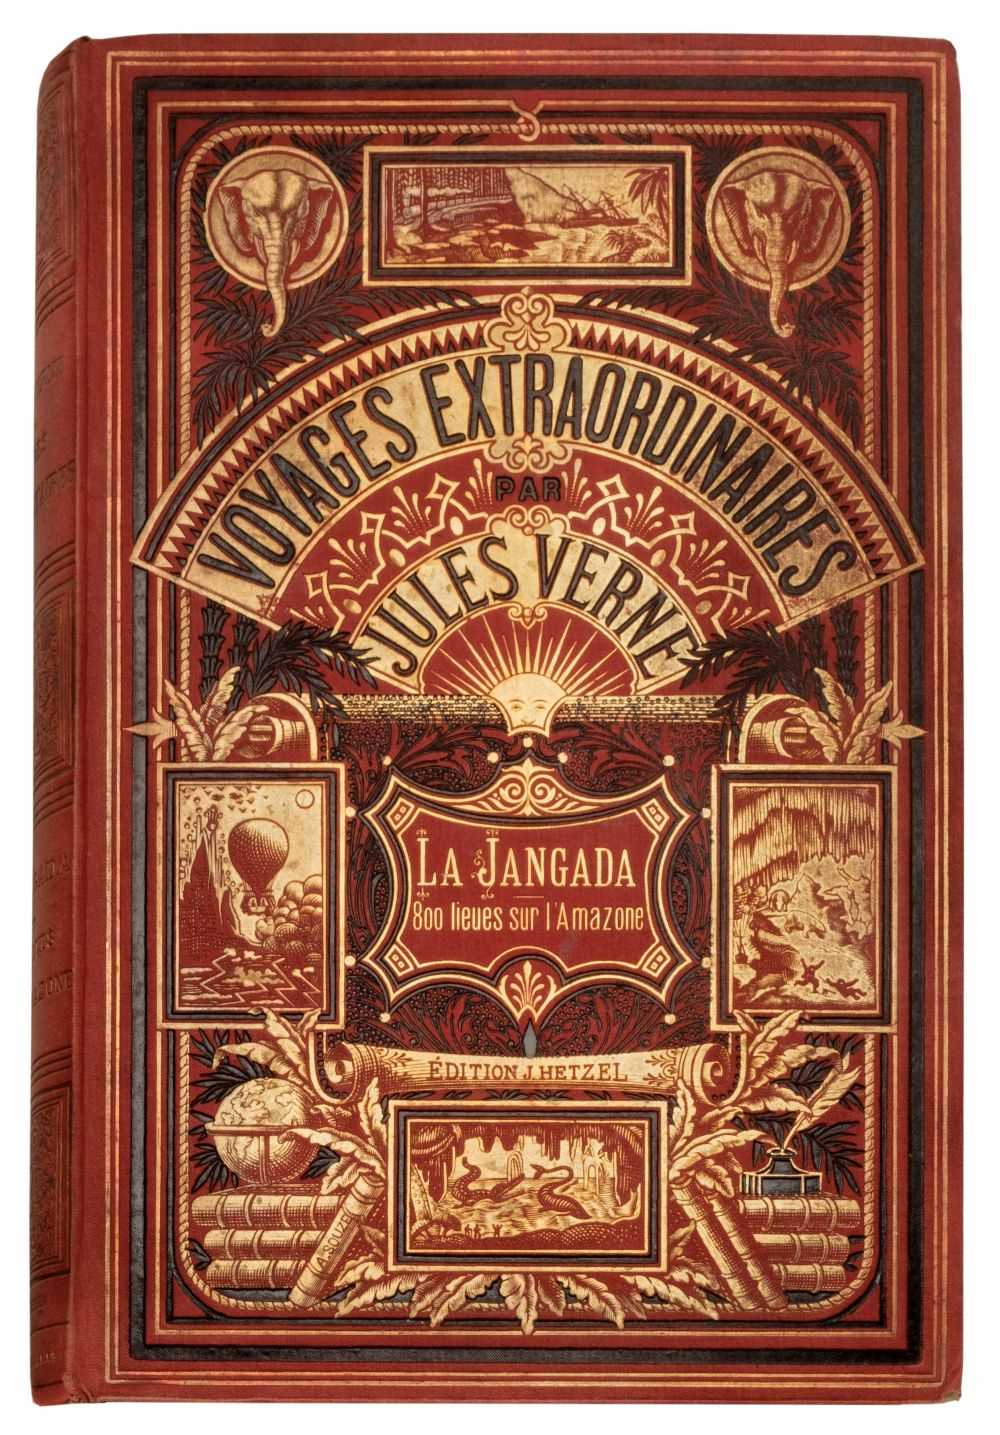 Lot 255 - Verne (Jules). Les Voyages Extraordinaires. La Jangada; huit cents lieues sur l'Amazone, [1881]